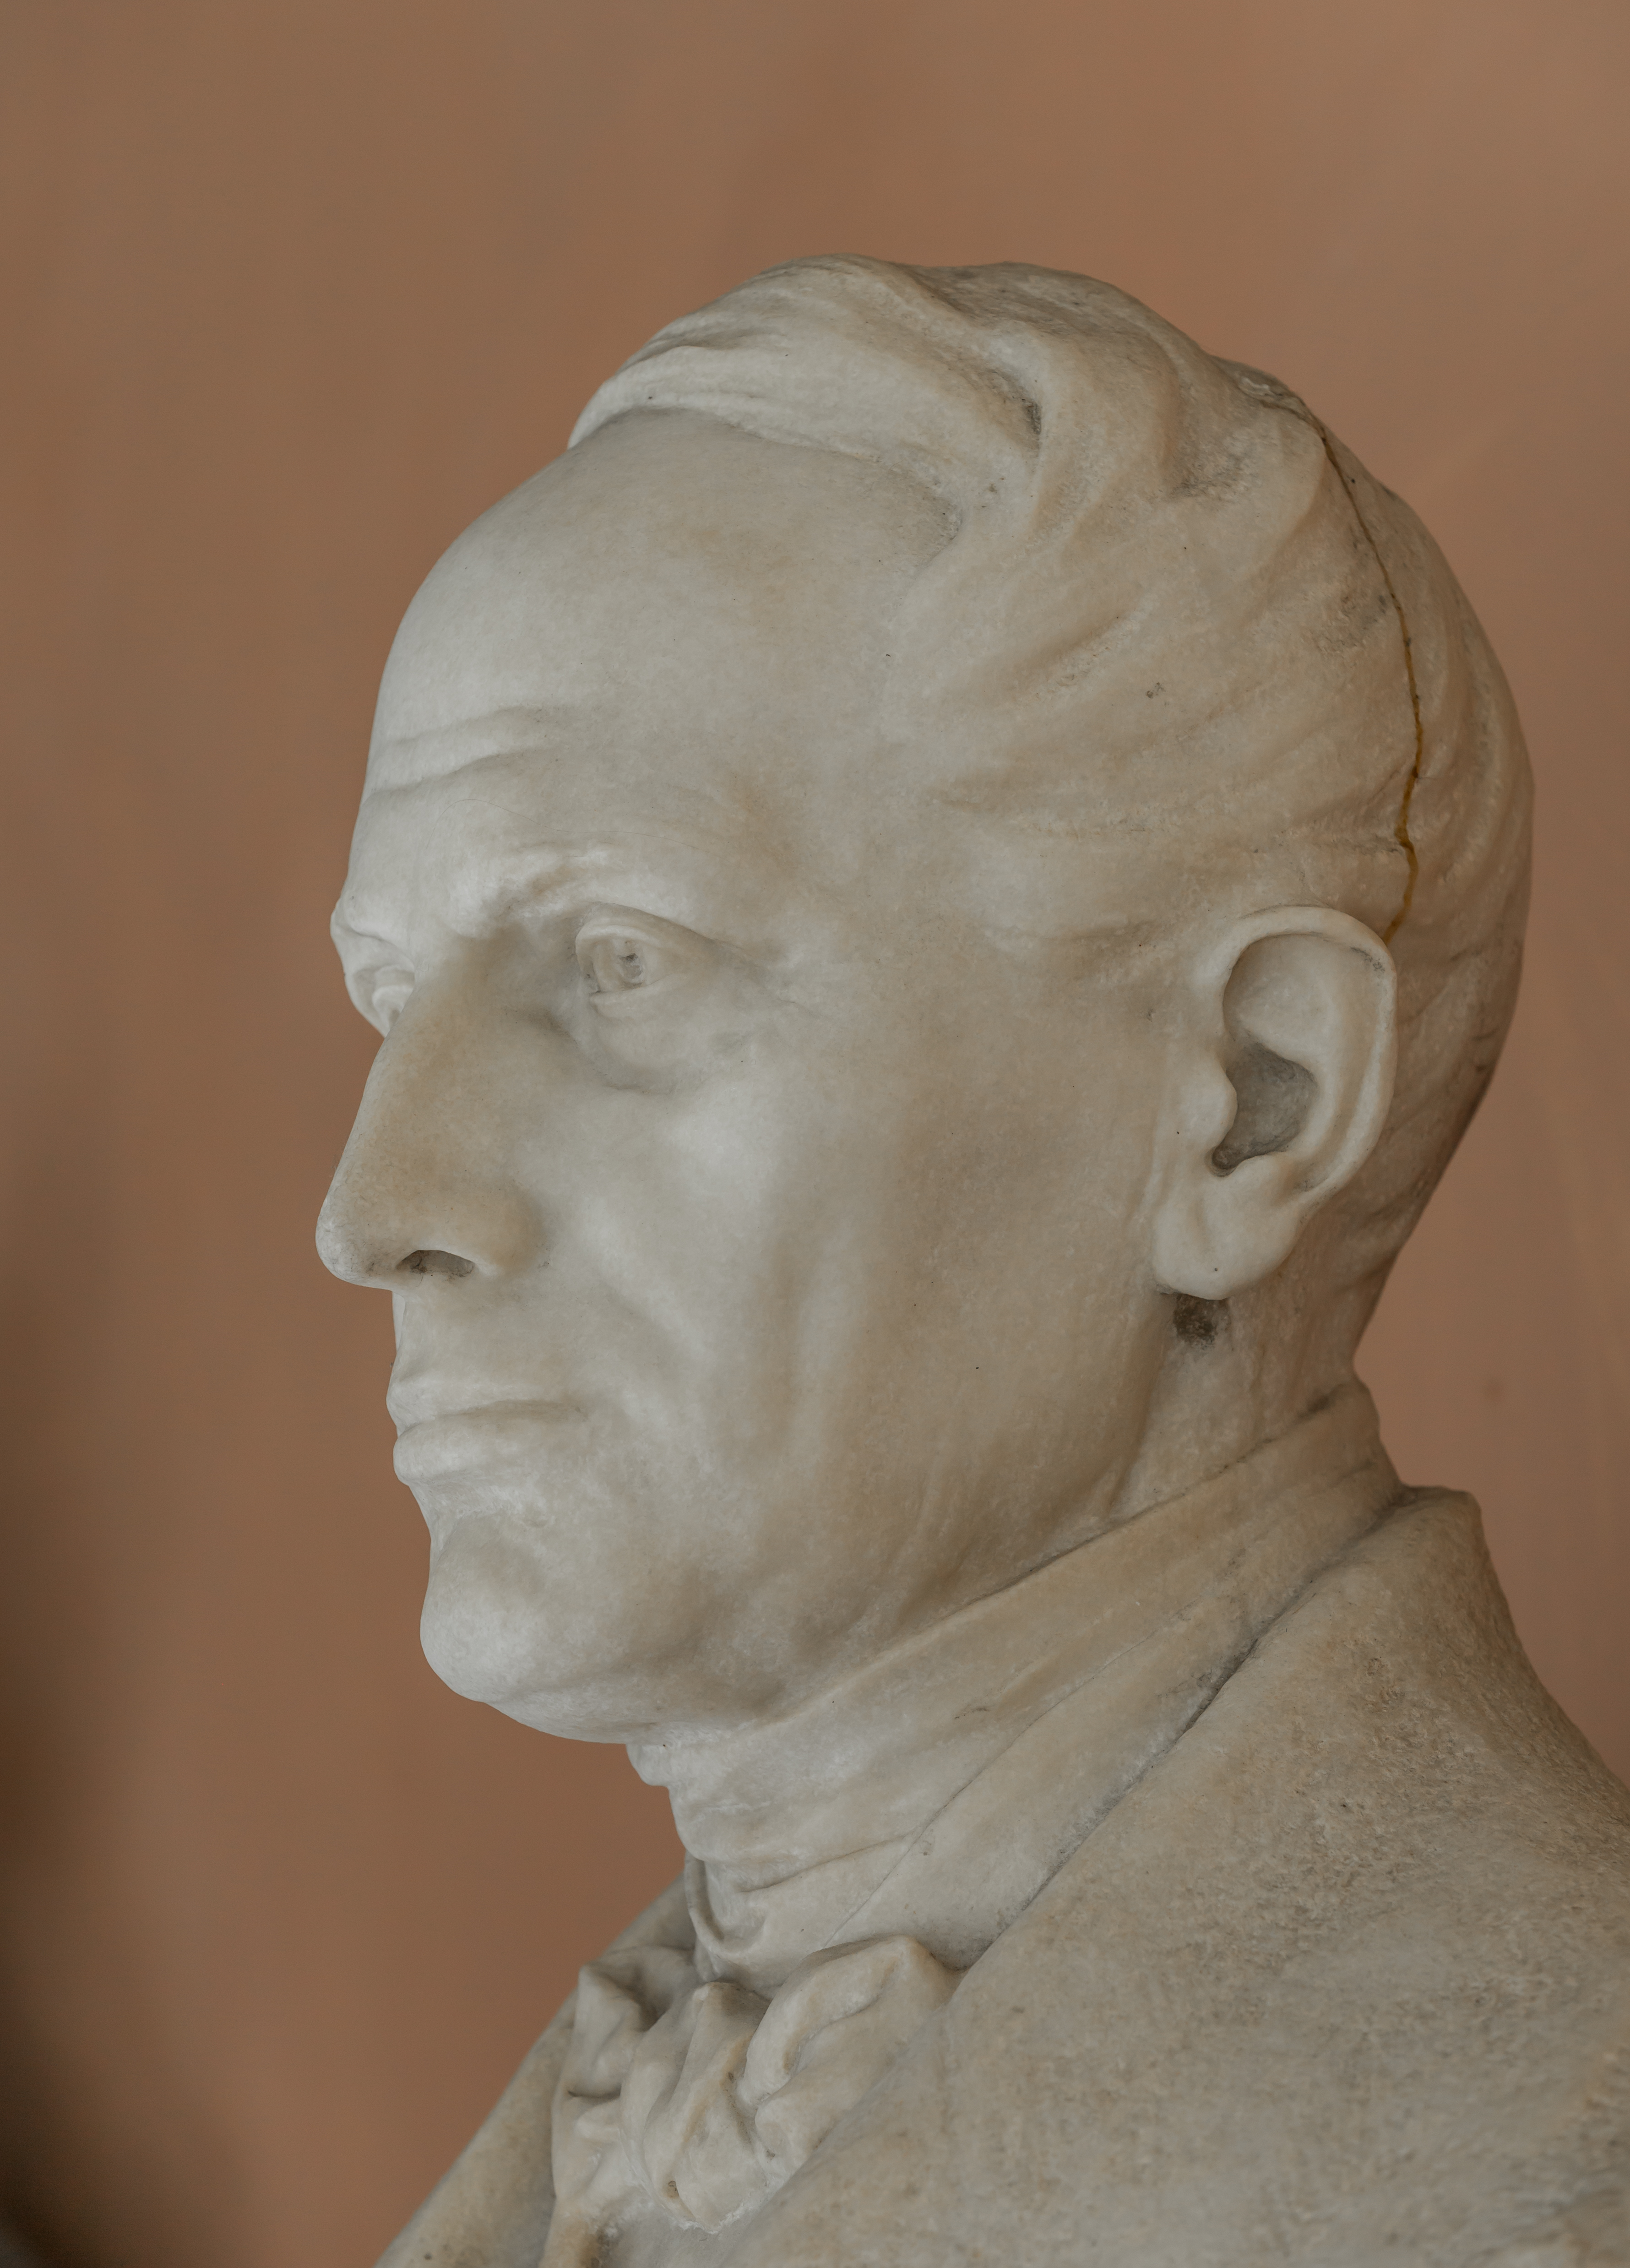 Christian Doppler (1803-1853), Nr. 111, bust (marble) in the Arkadenhof of the University of Vienna-2937